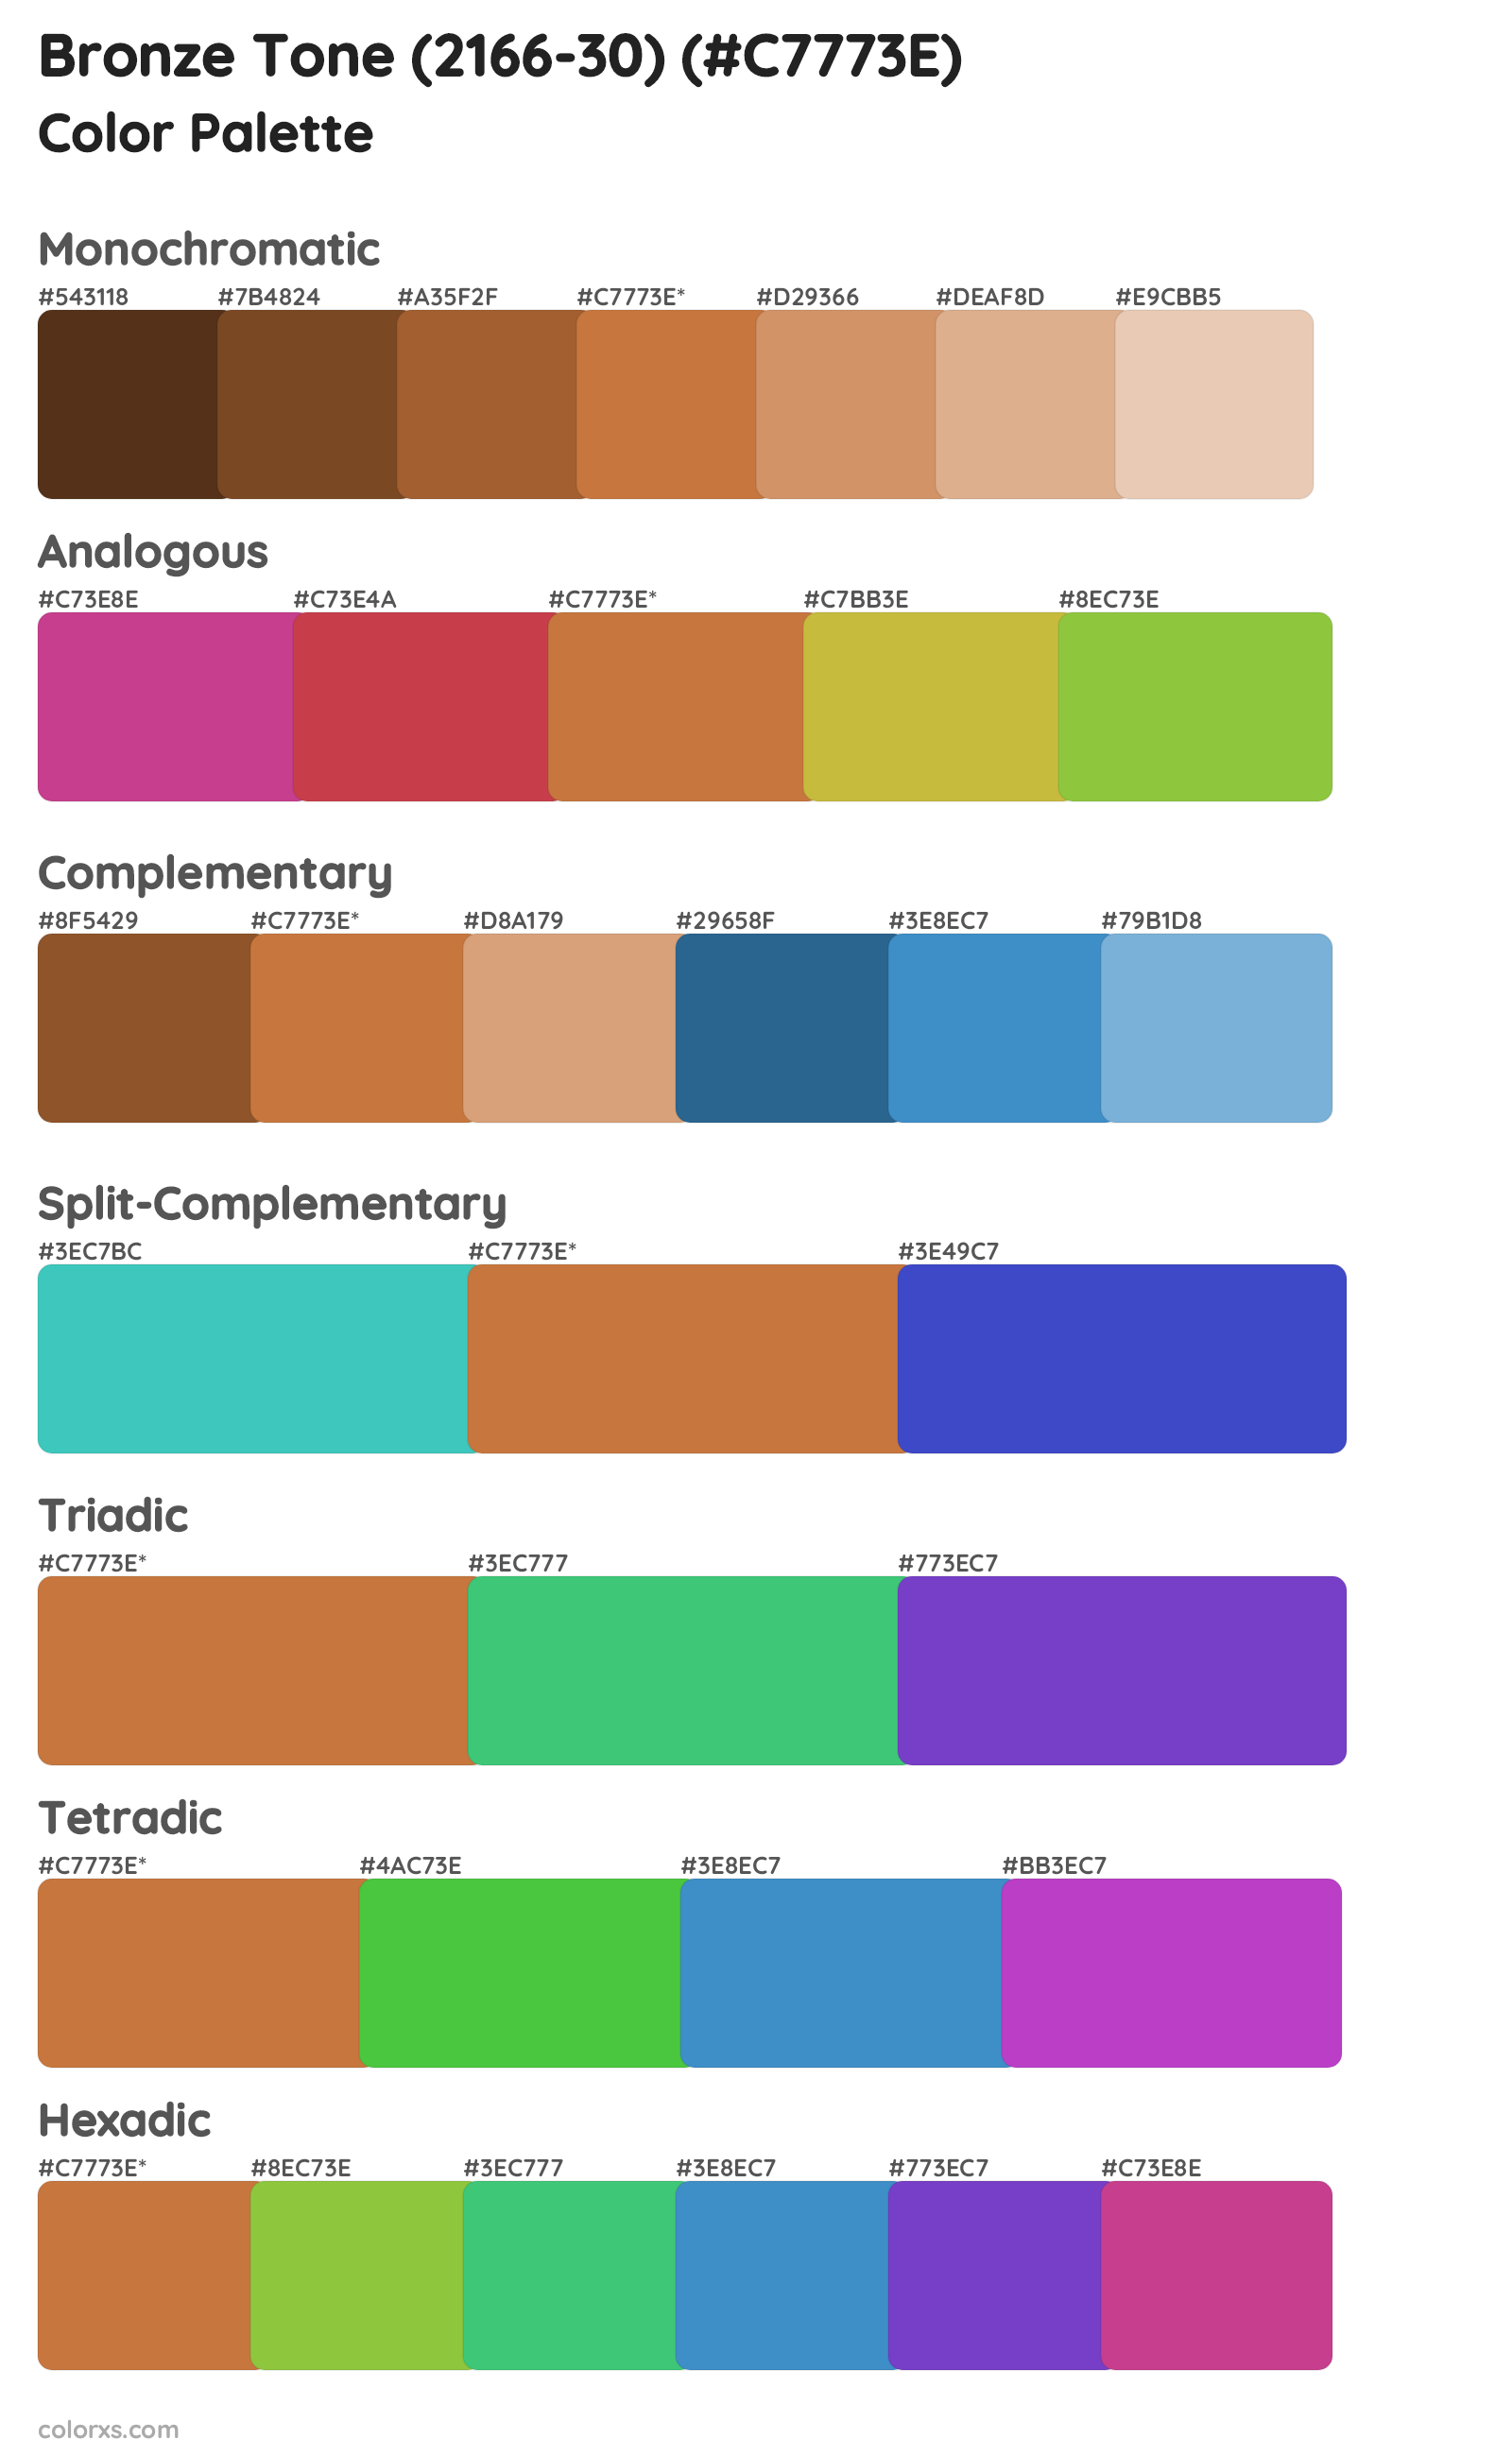 Bronze Tone (2166-30) Color Scheme Palettes